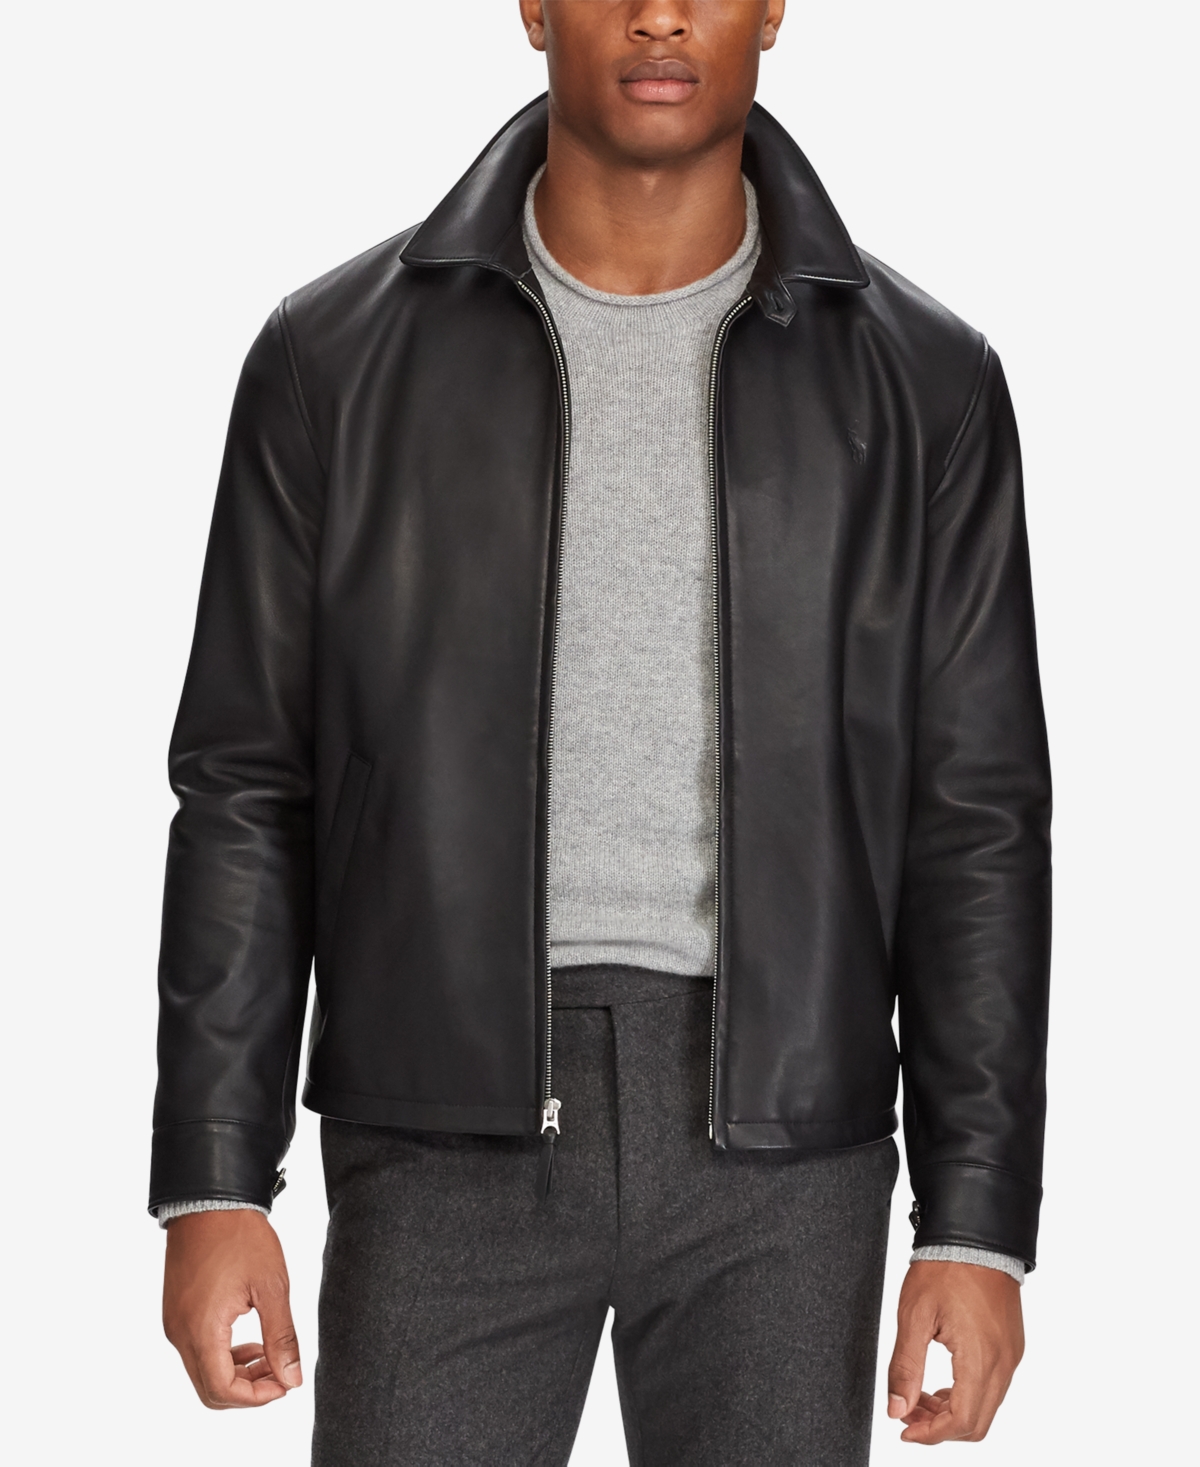 Men's Leather Jacket - Bison Brown